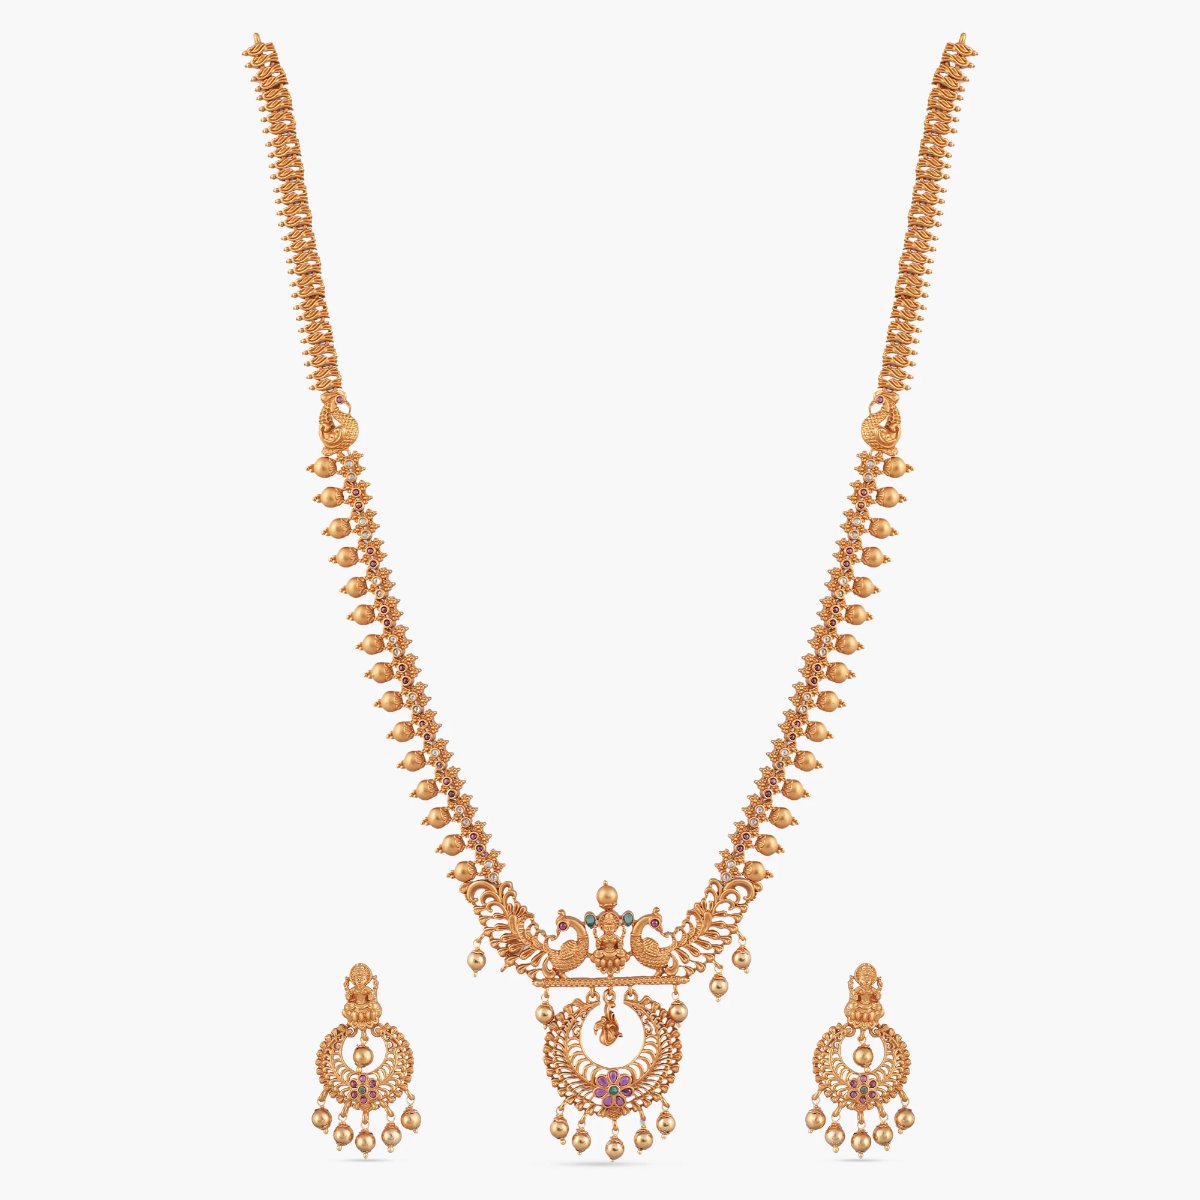 Hami Antique Long Necklace Set